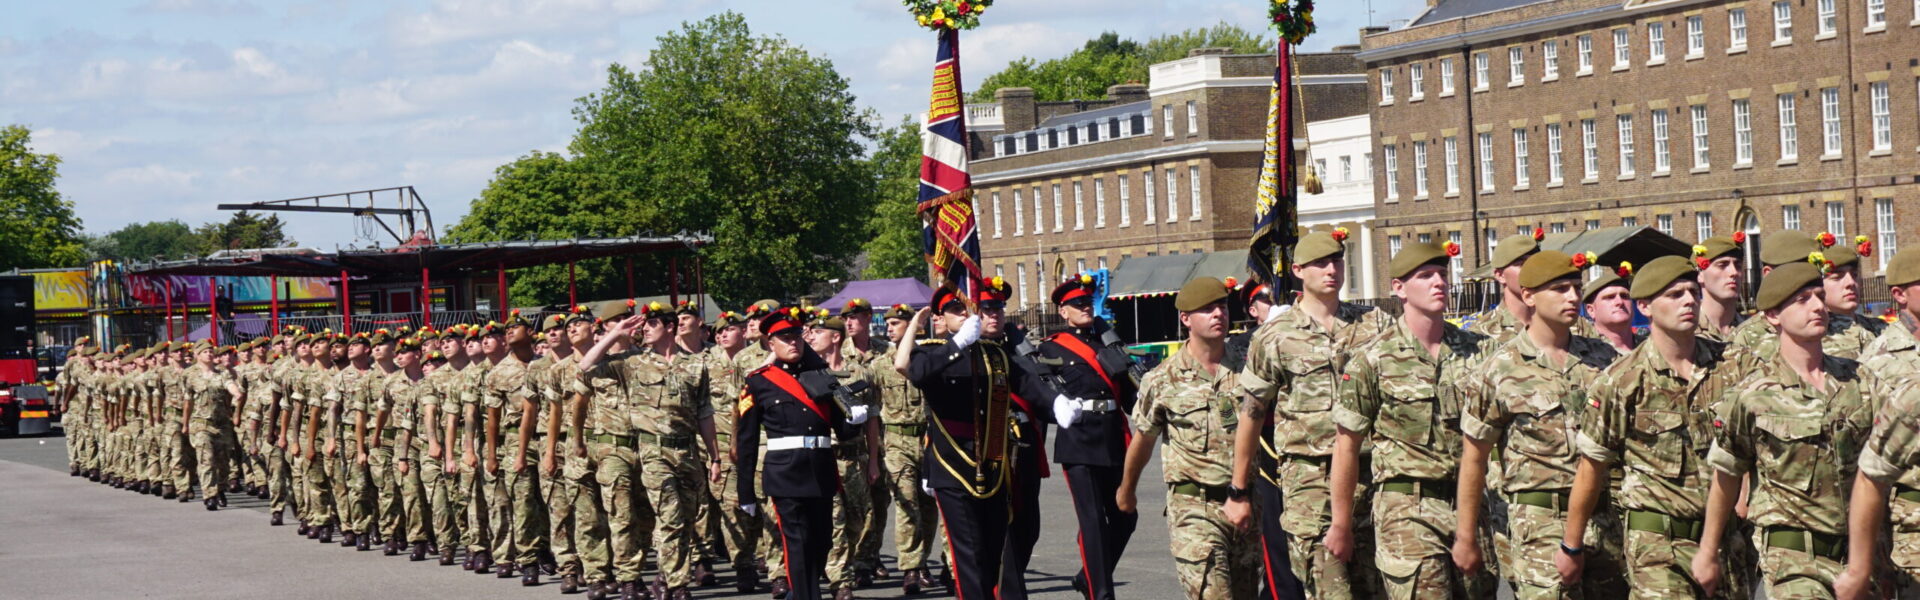 Royal Anglian Regiment